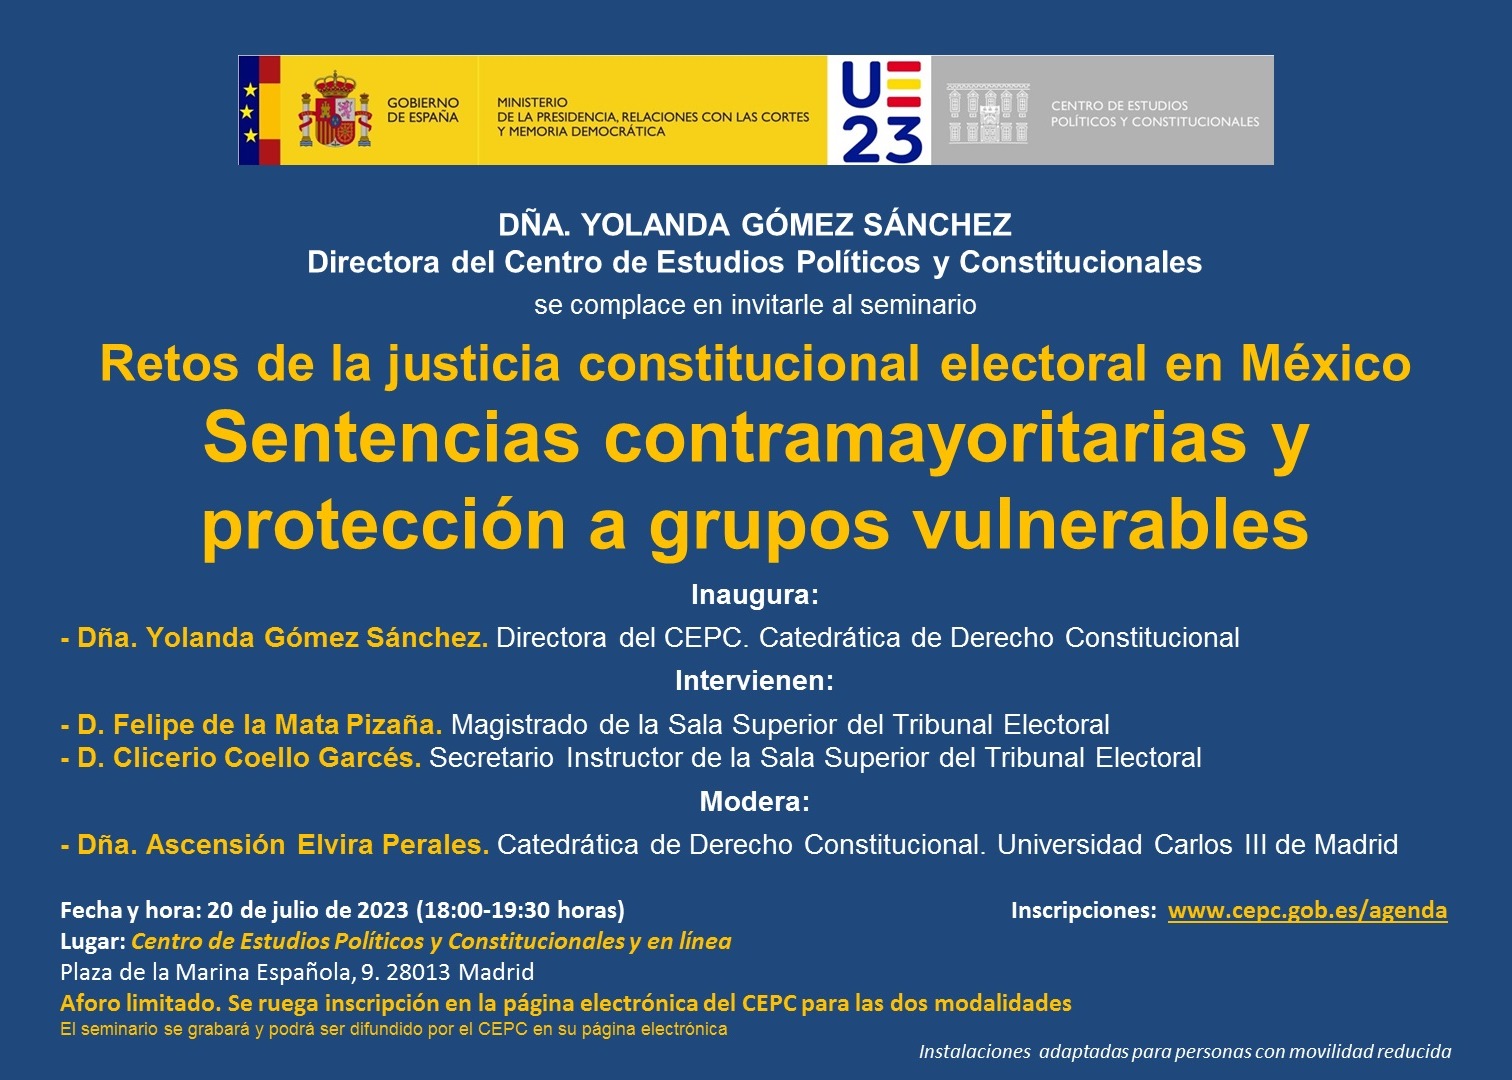 Seminario "Retos de la justicia constitucional electoral en México. Sentencias contramayoritarias y protección a grupos vulnerables"